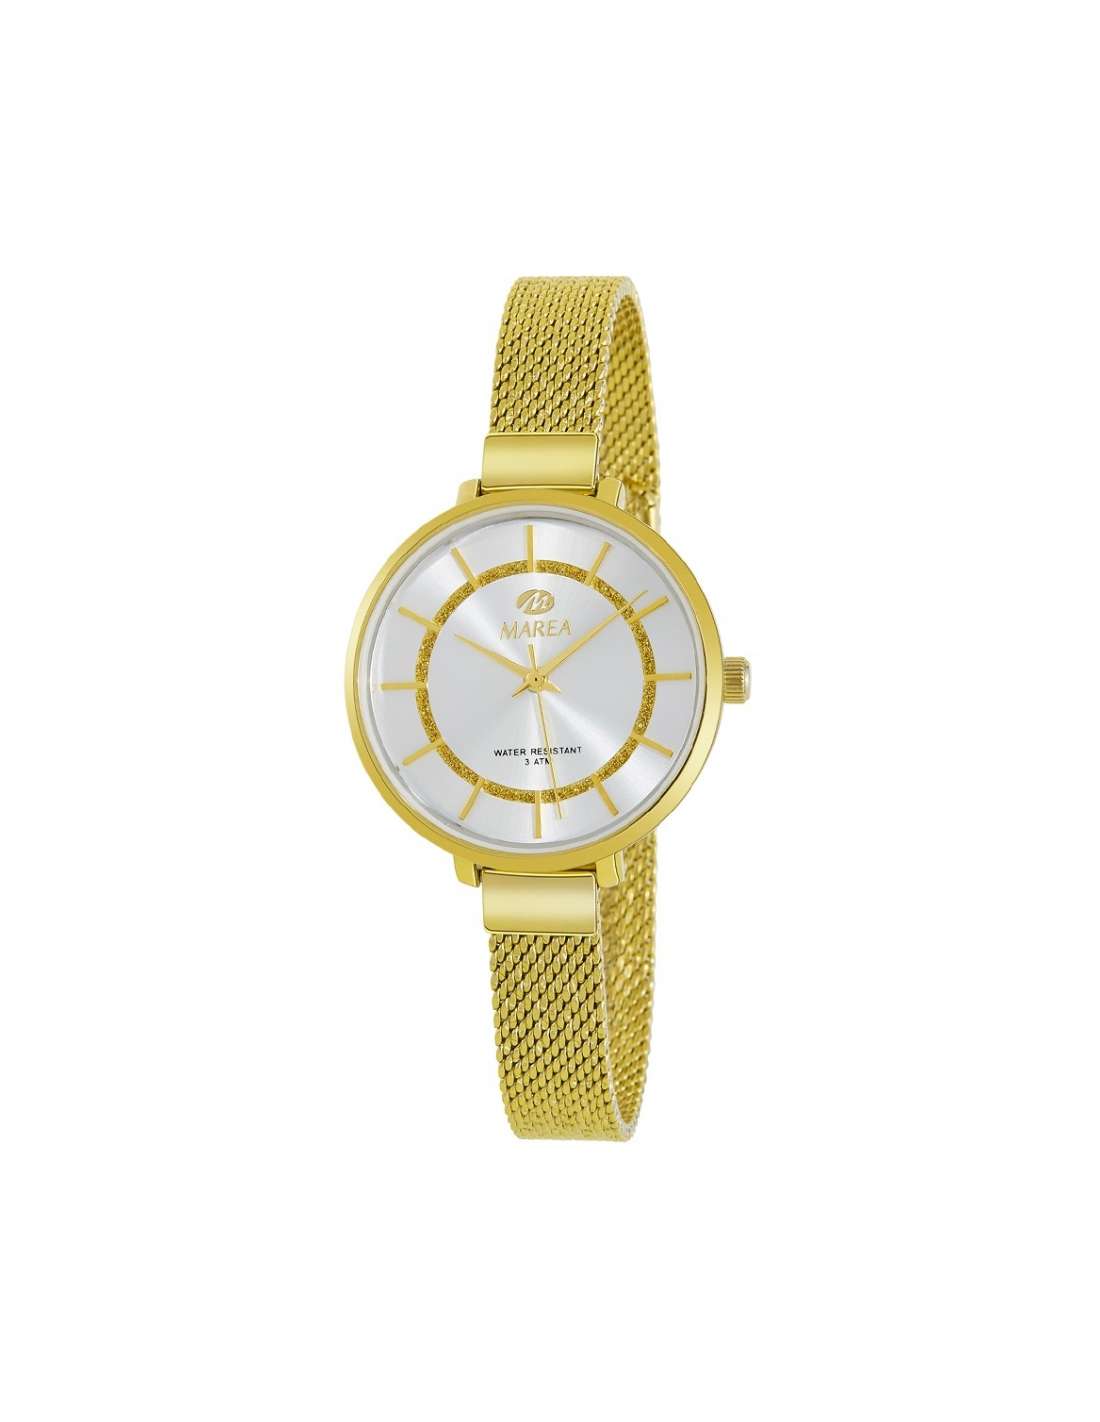 Pack Reloj Marea Mujer B54086/21 reloj analógico y un collar dorado